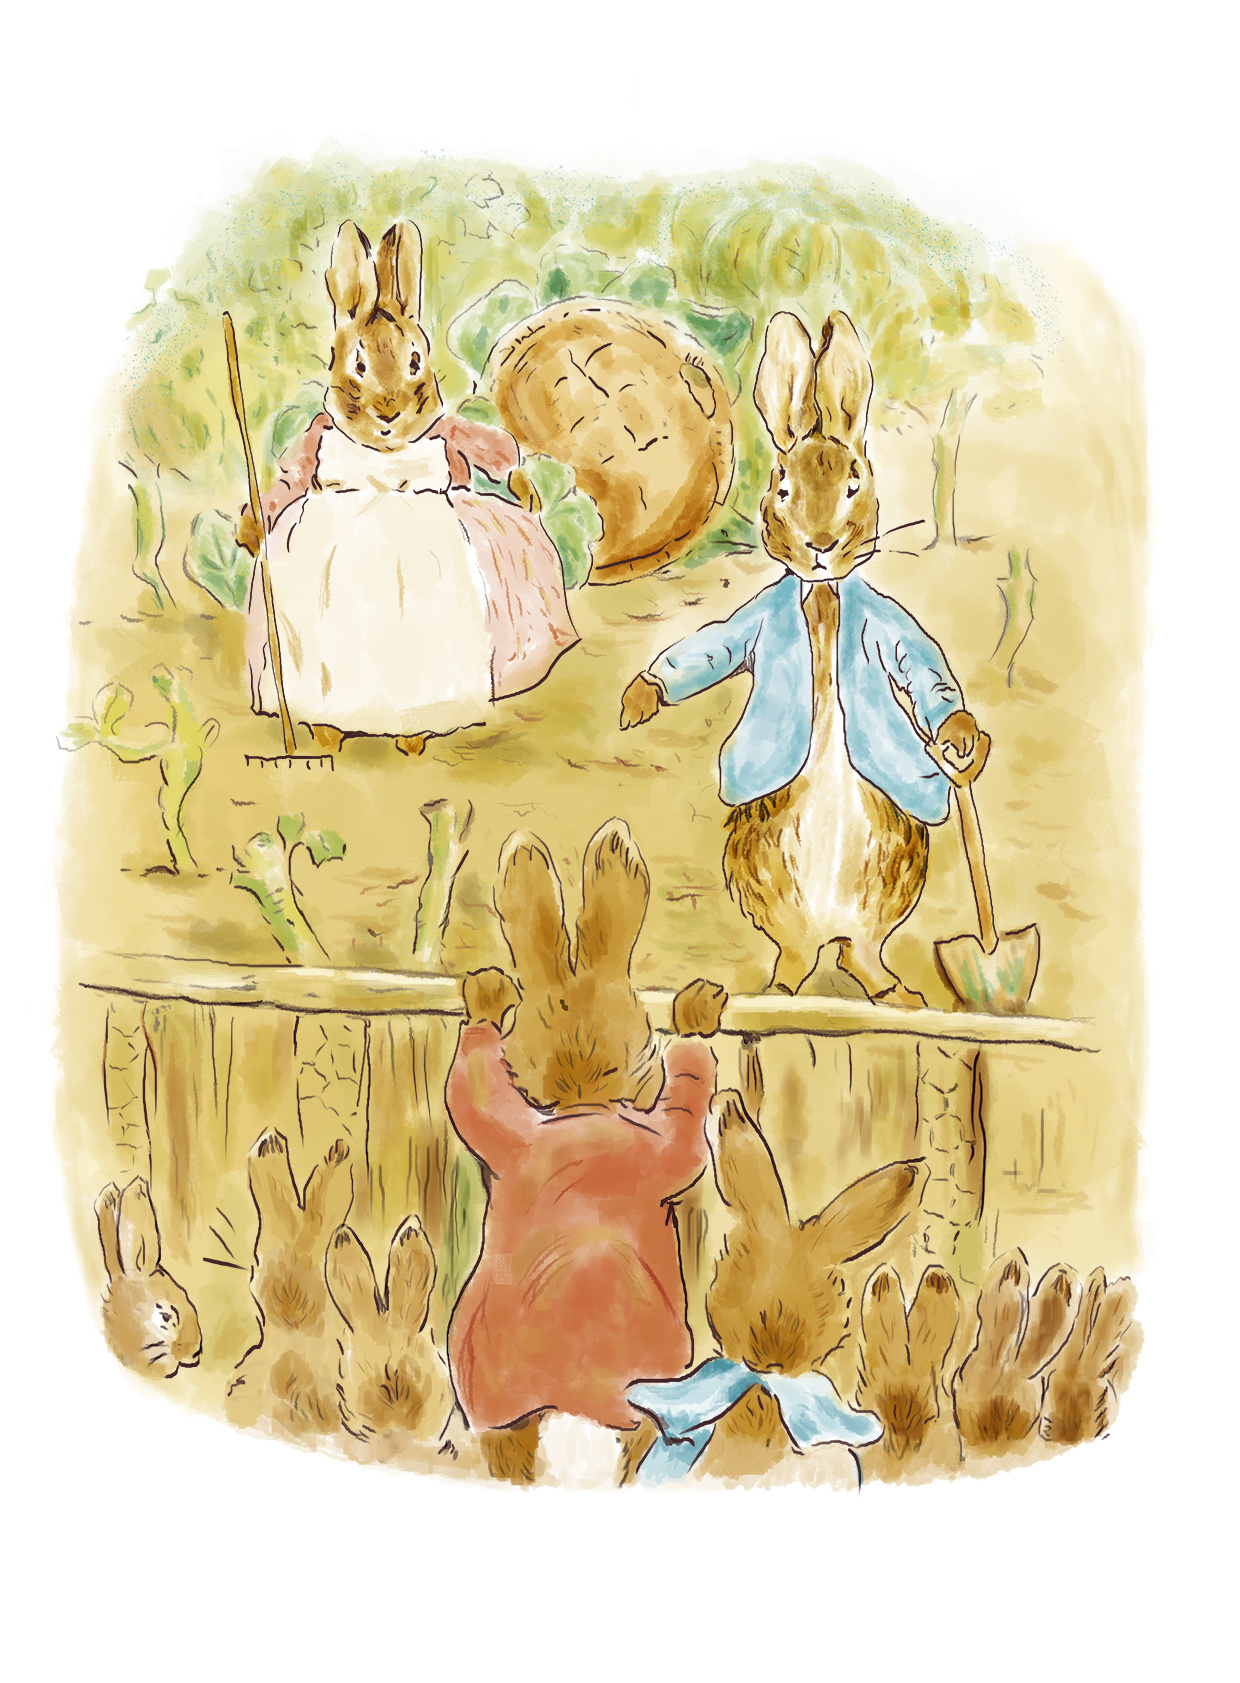 彼得兔简笔画步骤图_卡通动物 - 千千简笔画